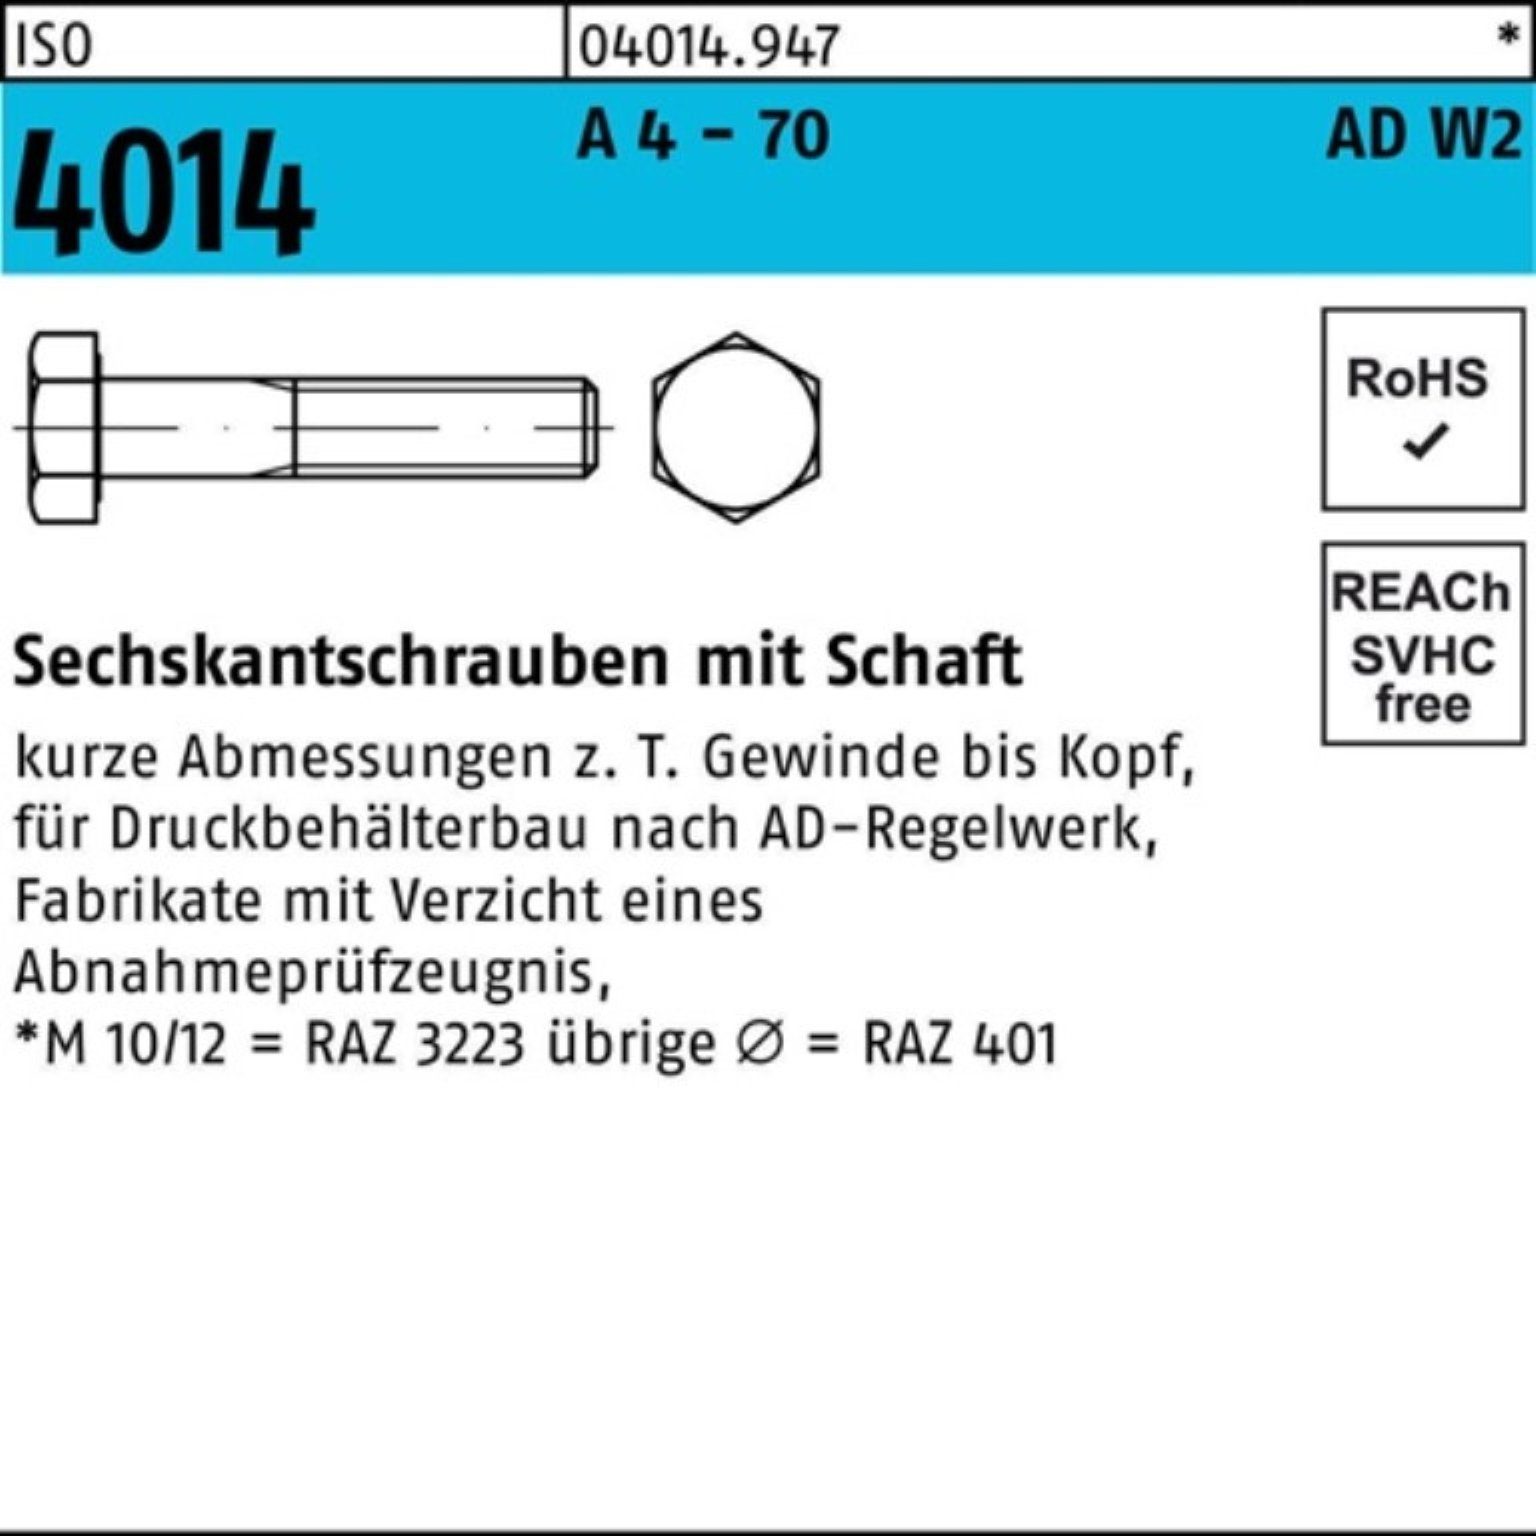 Sechskantschraube Pack - Schaft M20x Bufab Sechskantschraube 1 4014 4 100er AD-W2 70 A ISO 180